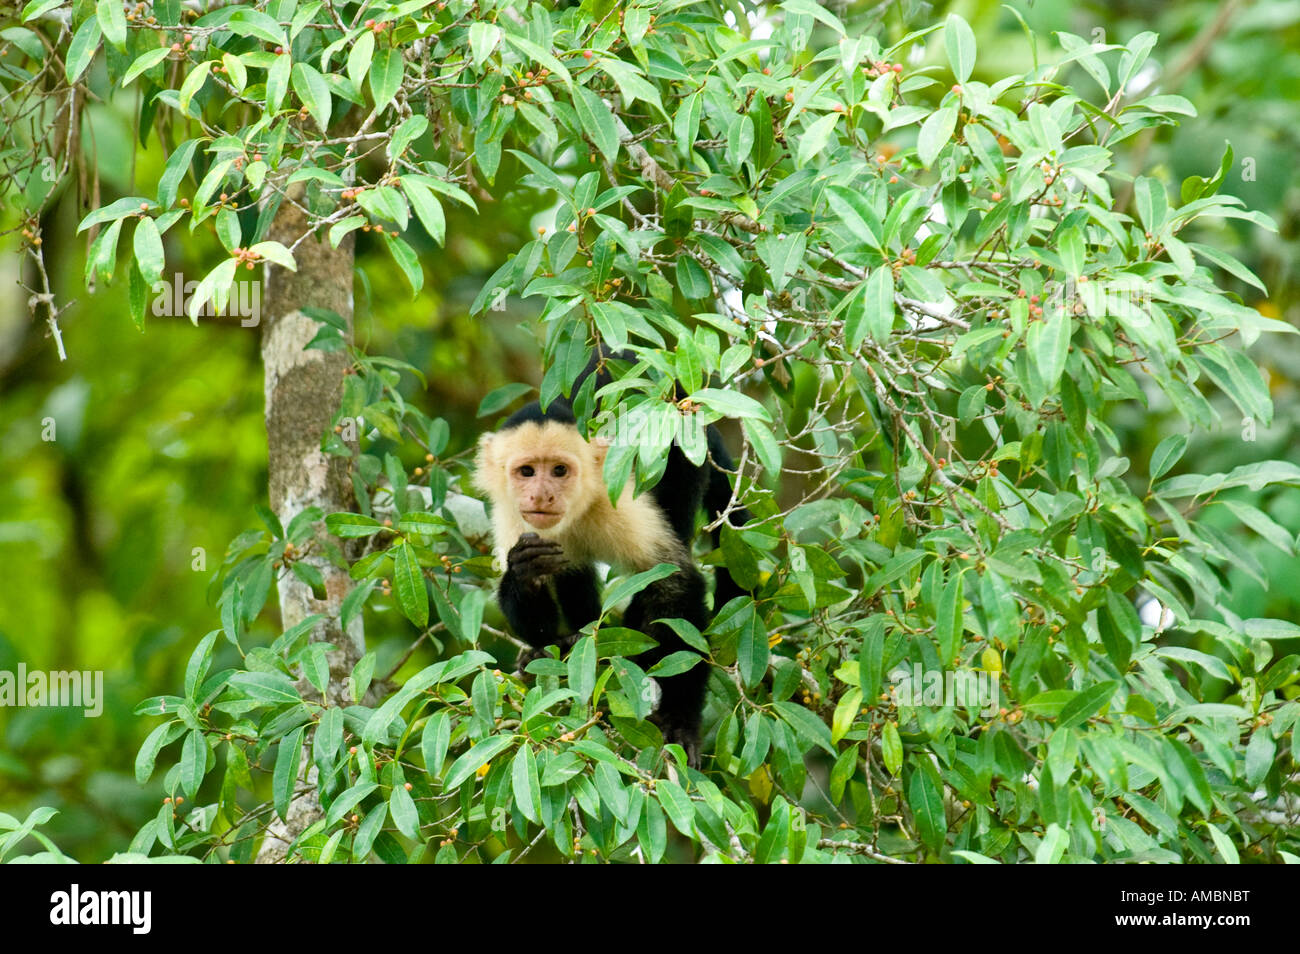 Cara blanca mono capuchino (Cebus capucinus) Foto de stock